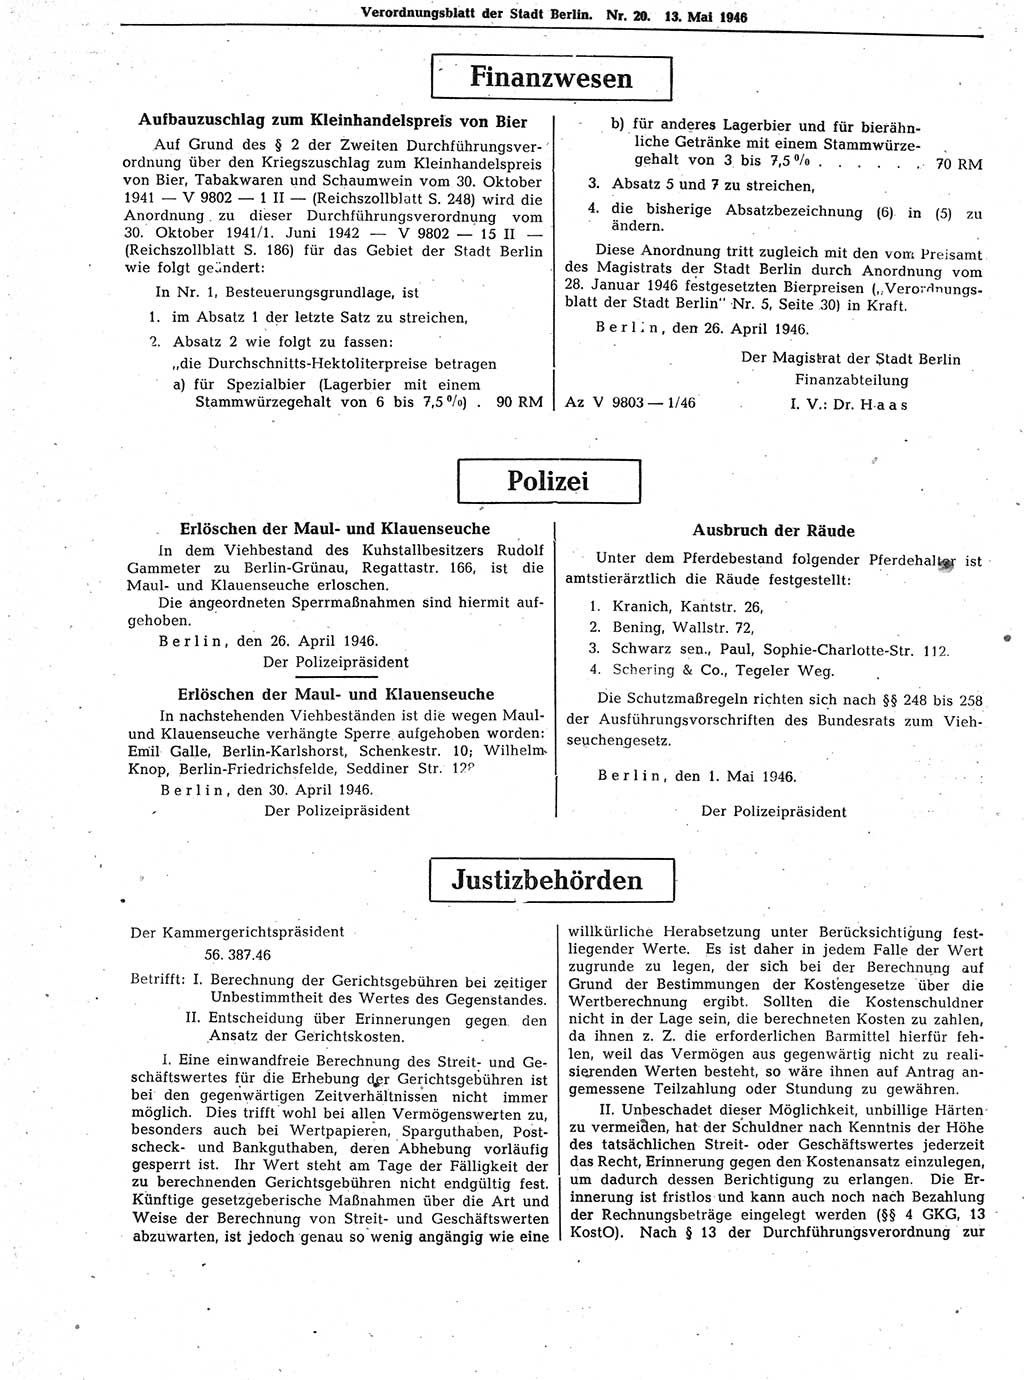 Verordnungsblatt (VOBl.) der Stadt Berlin, für Groß-Berlin 1946, Seite 156 (VOBl. Bln. 1946, S. 156)